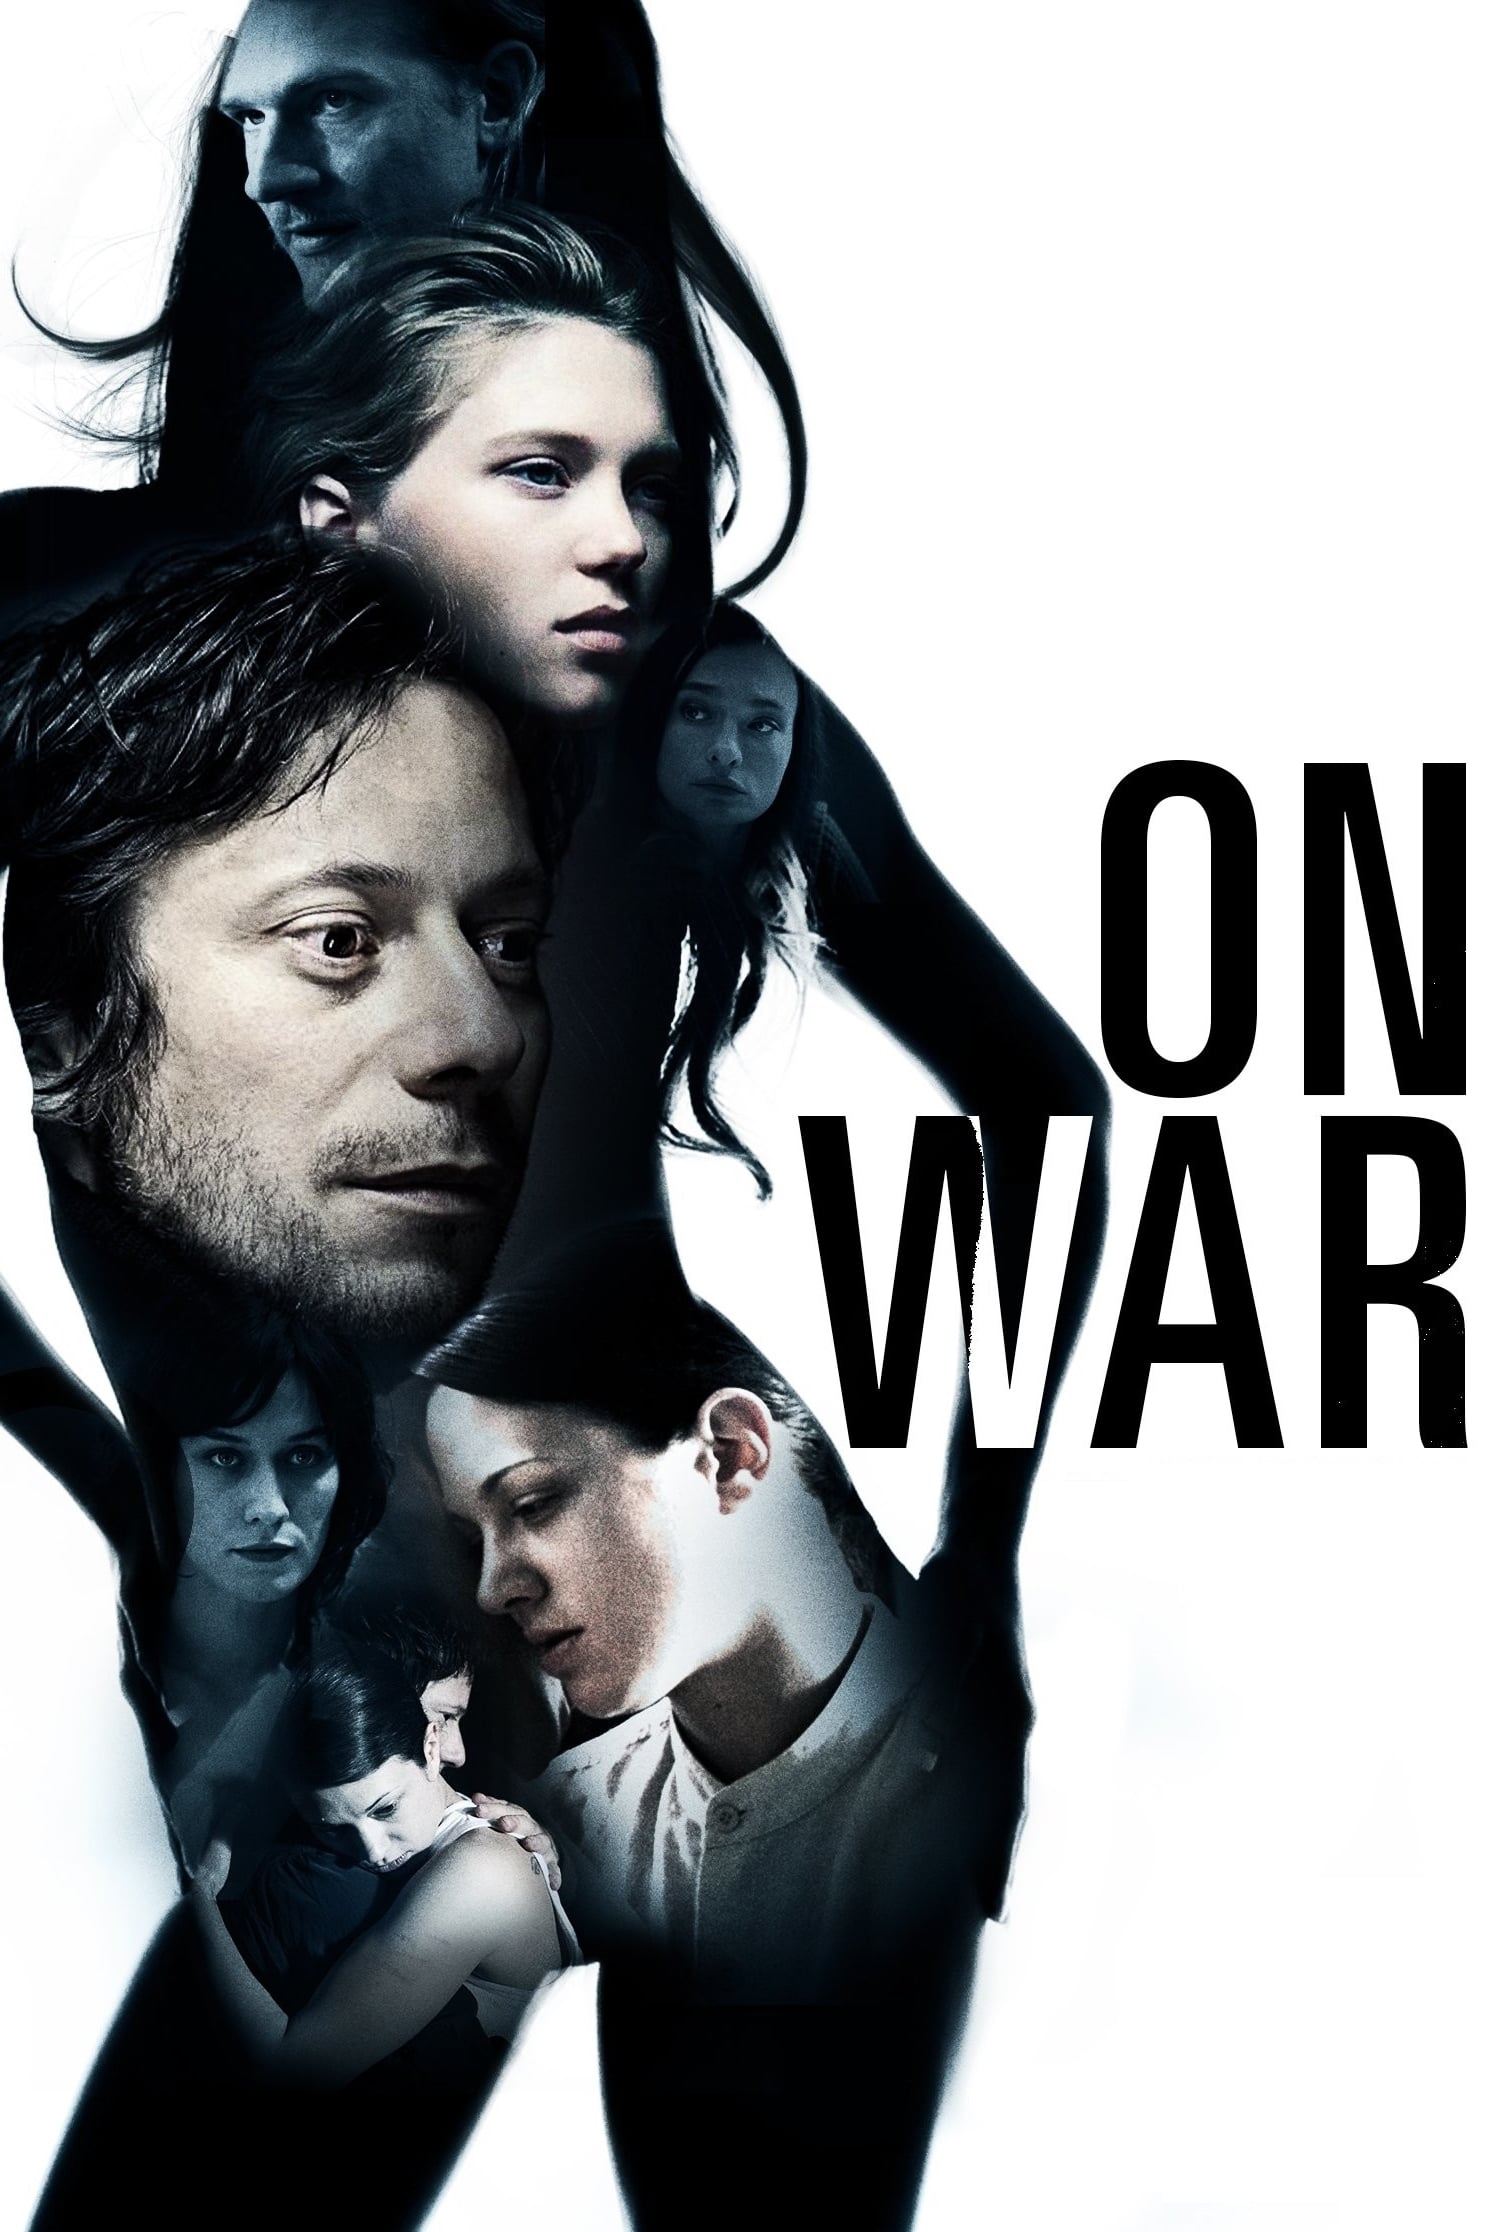 On War (2008)